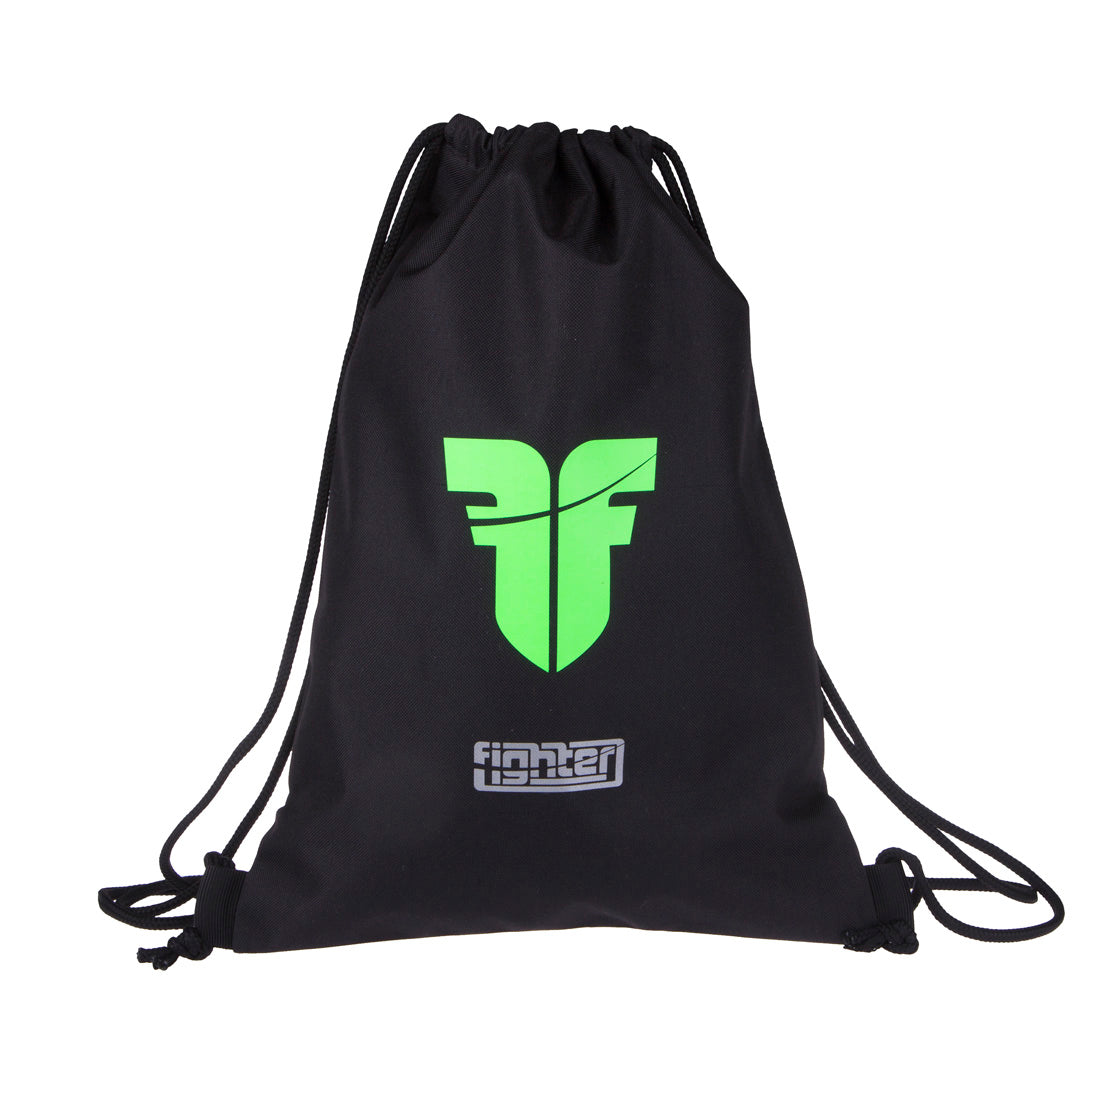 Bag Fighter - noir/vert fluo, FBG-12